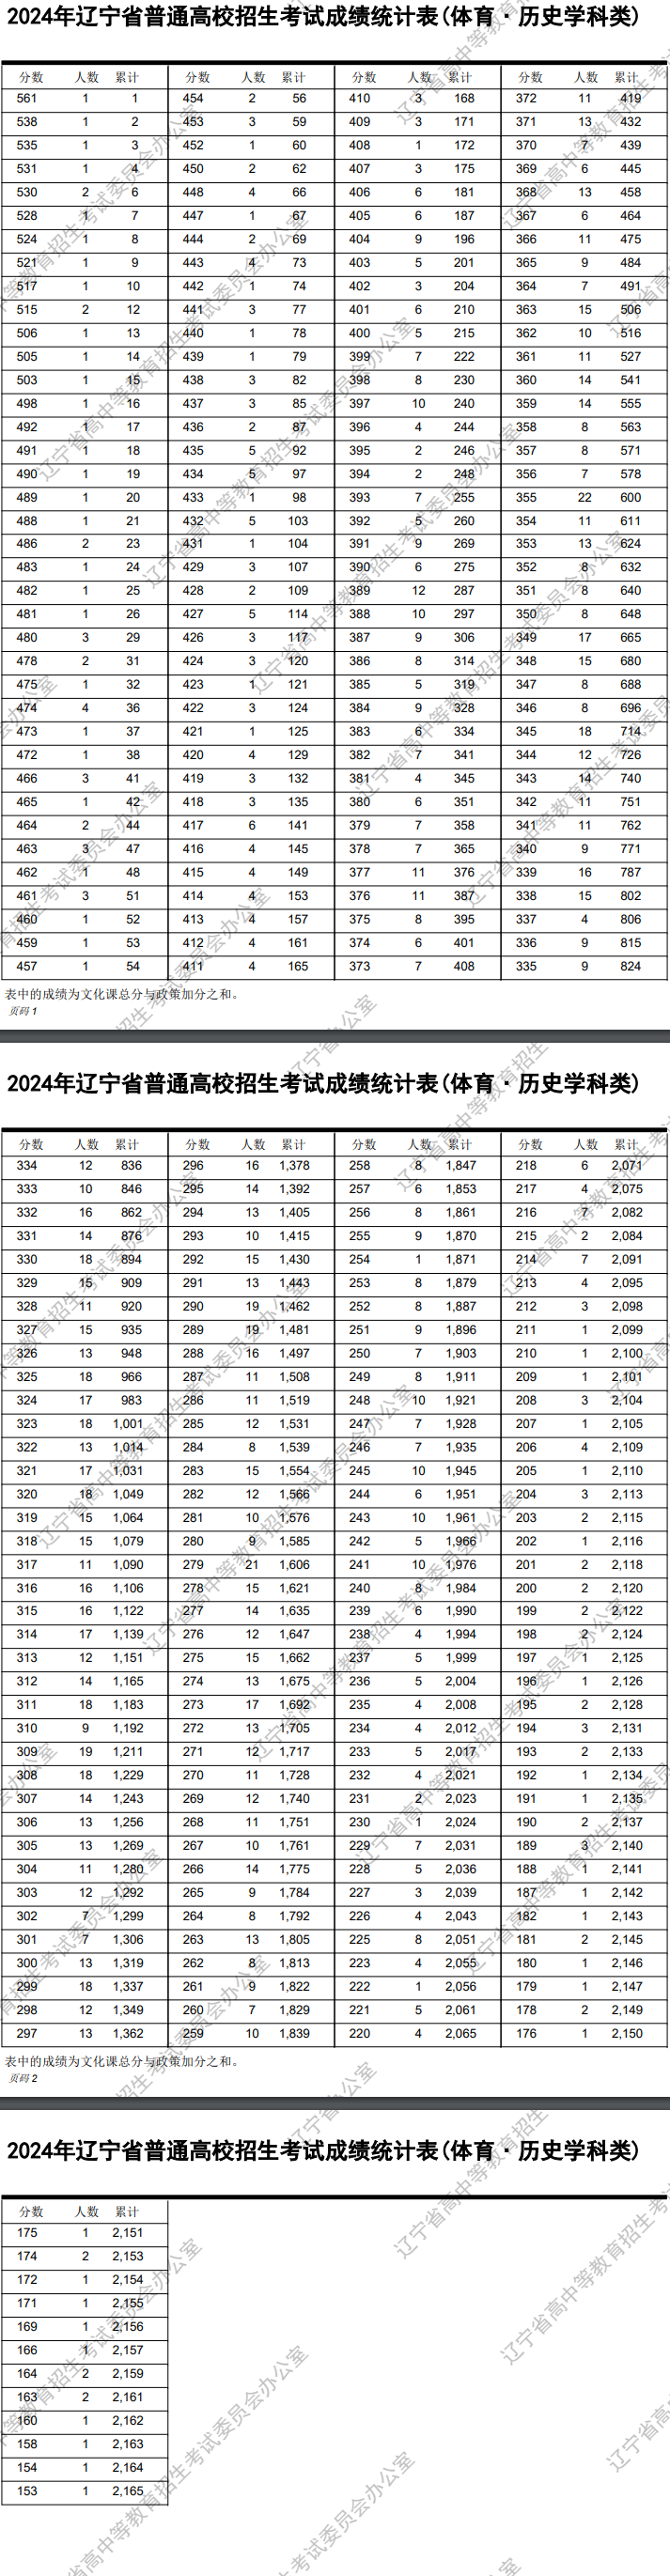 2024辽宁高考体育类一分一段表公布 成绩排名汇总【完整版】